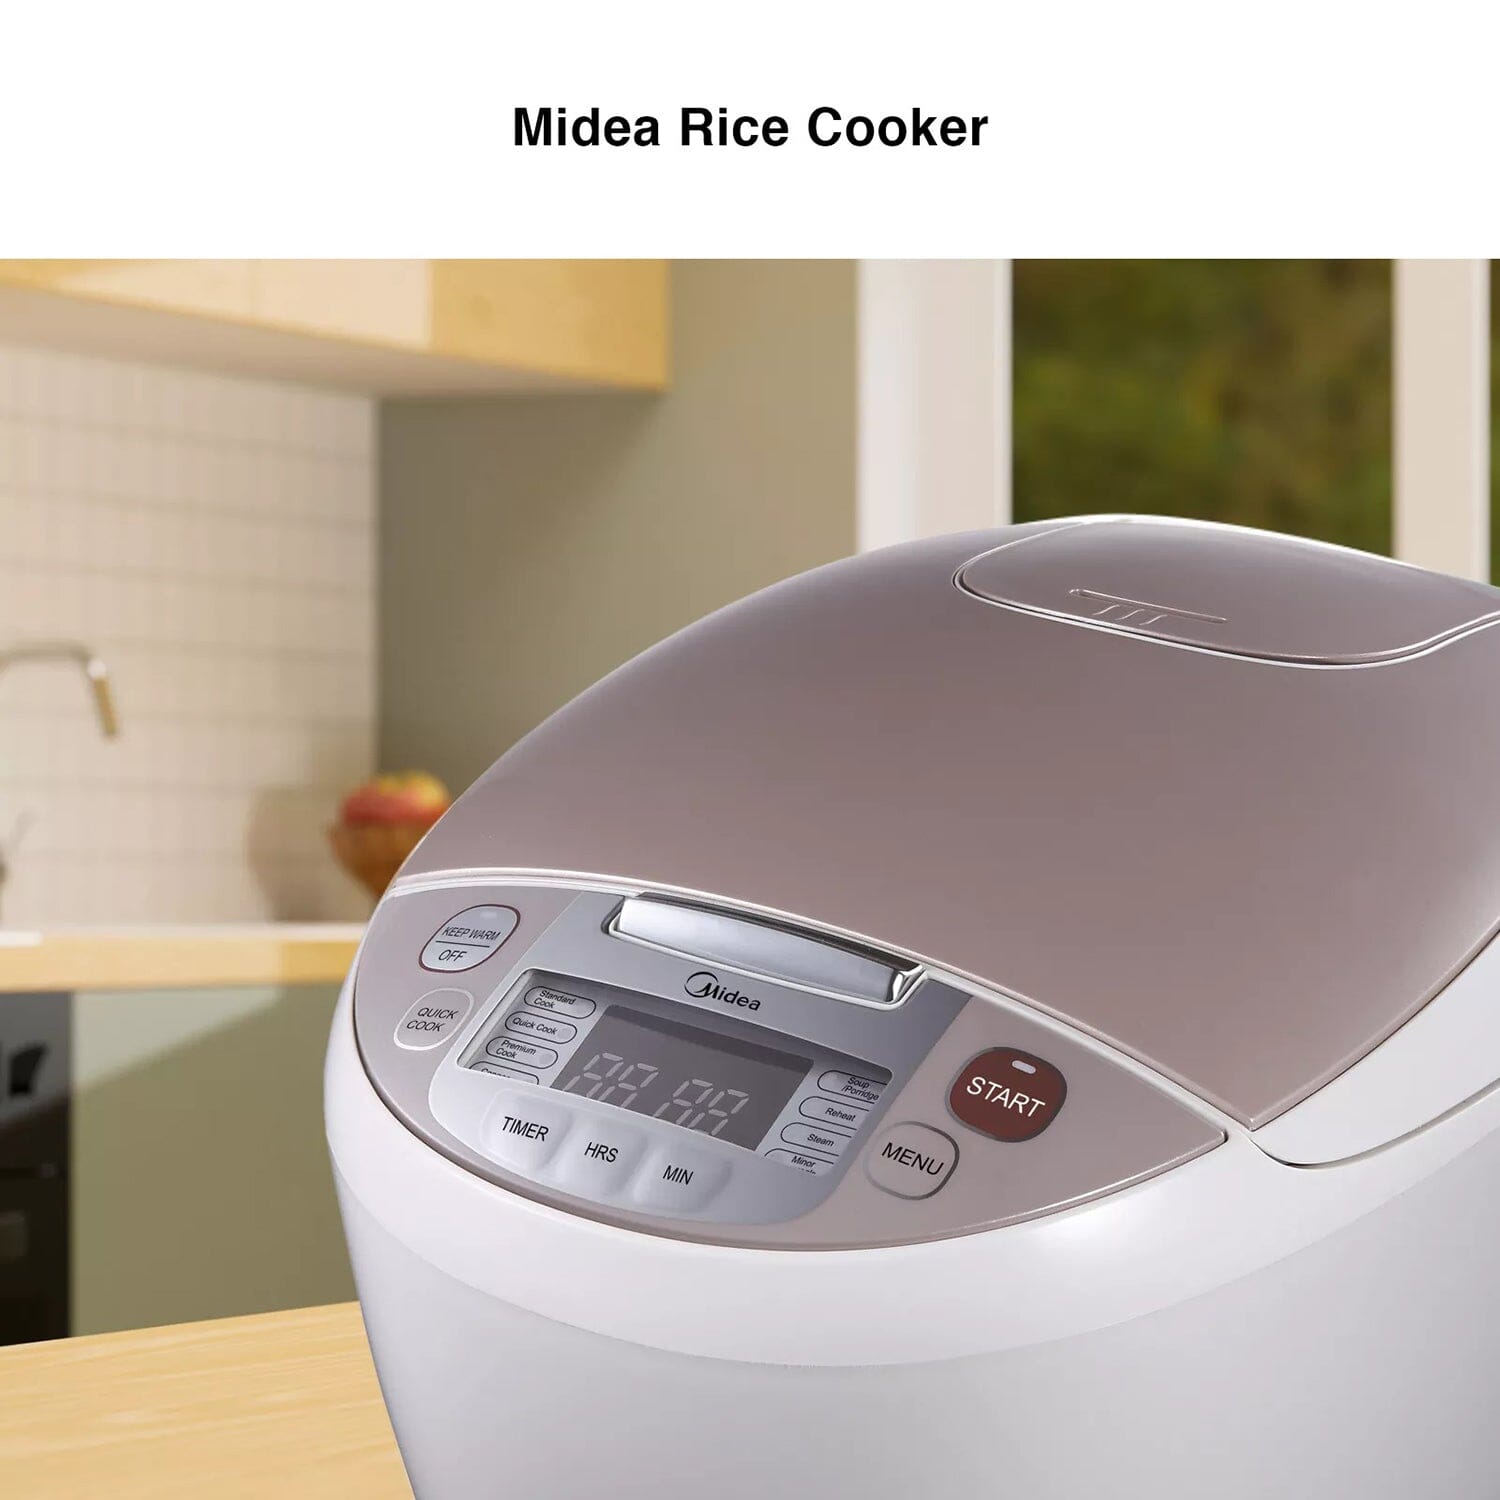 Midea 1.0L Digital Rice Cooker